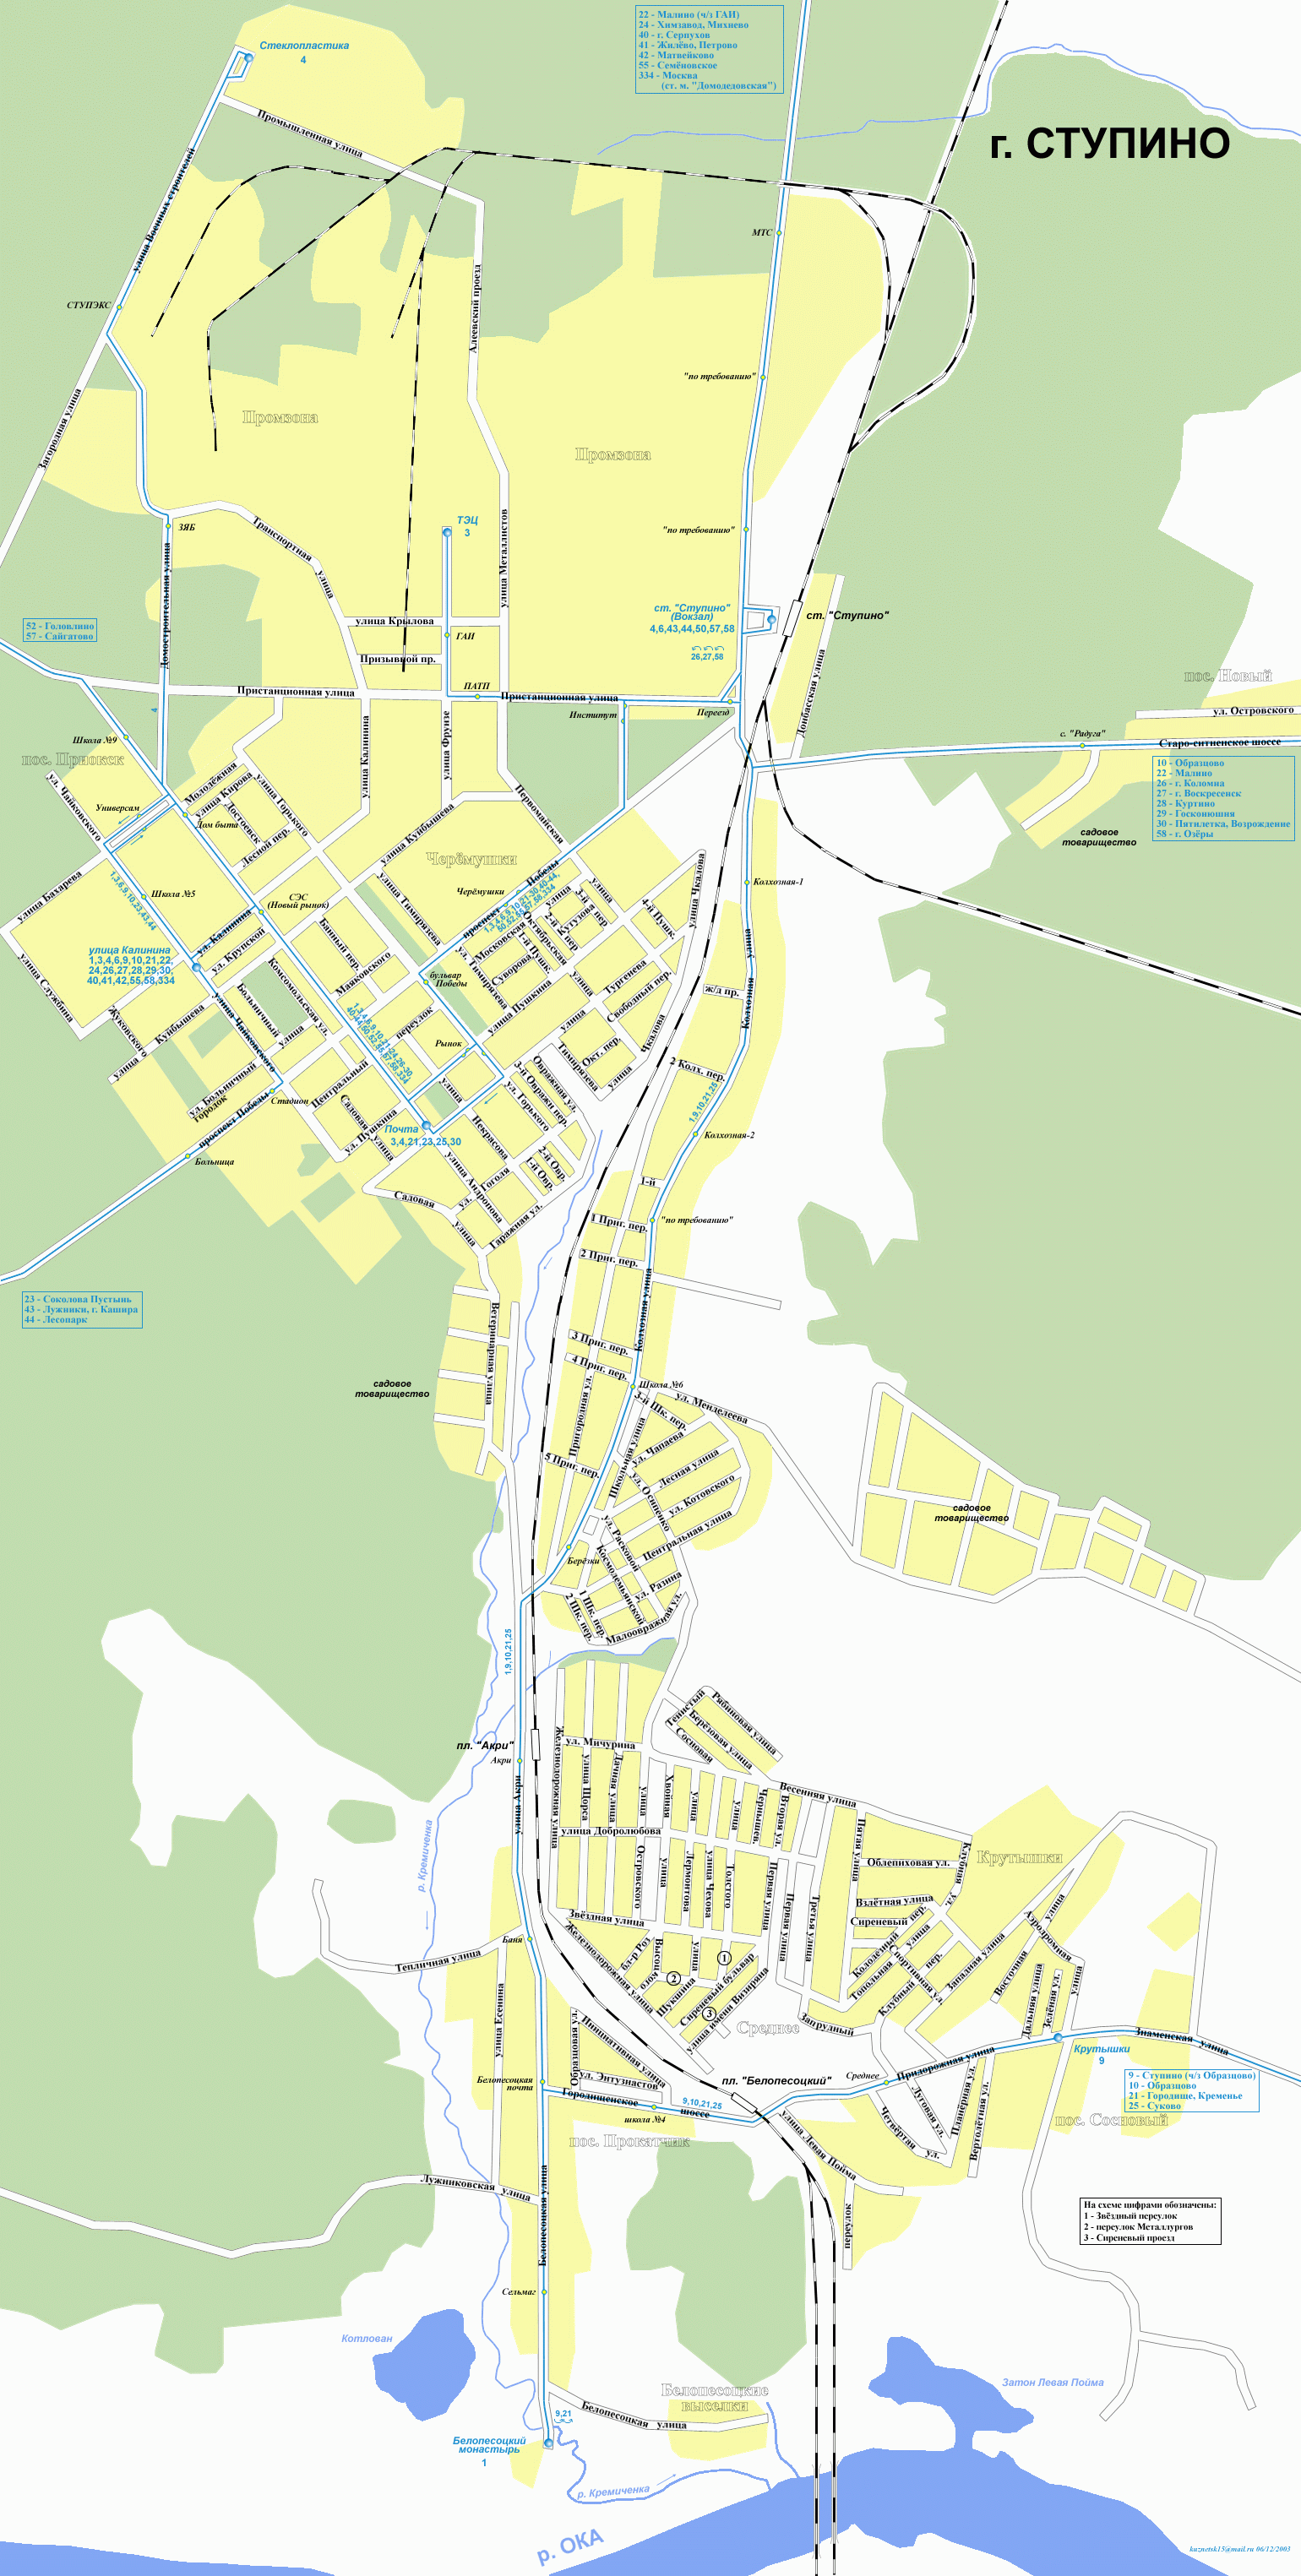 Map of Stupino